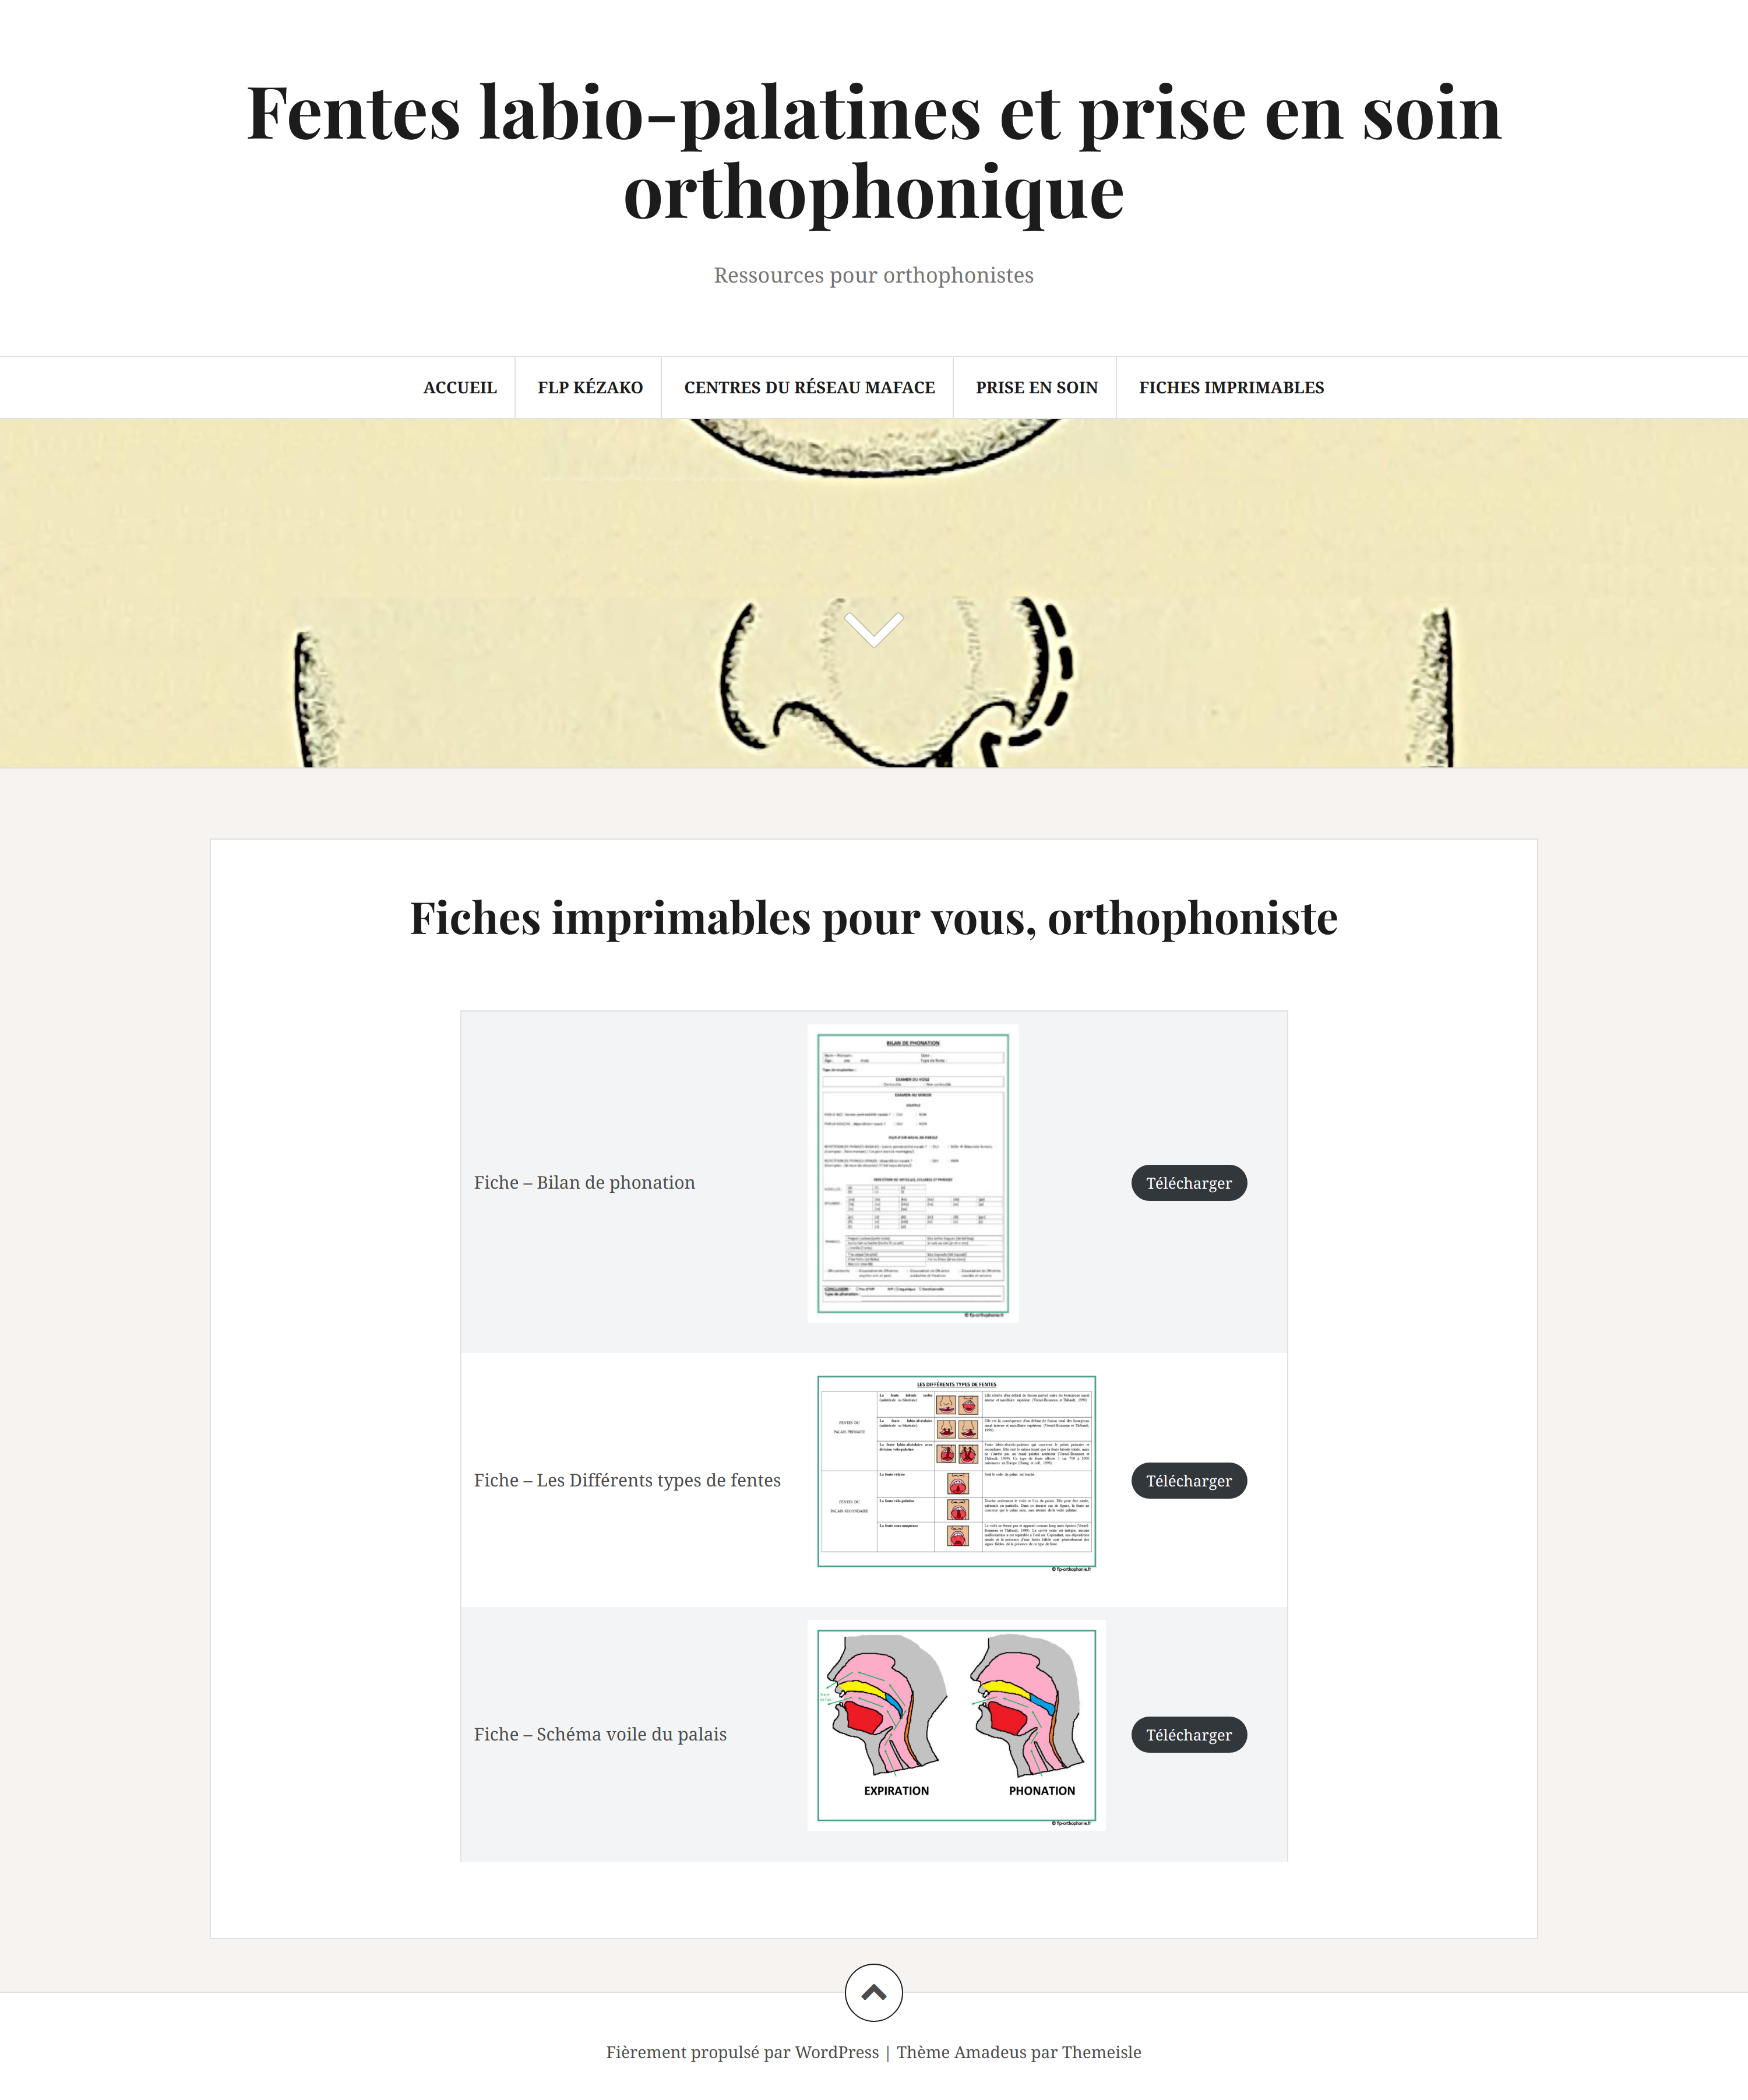 Website "Fentes labio-palatines et prise en soin orthophonique"